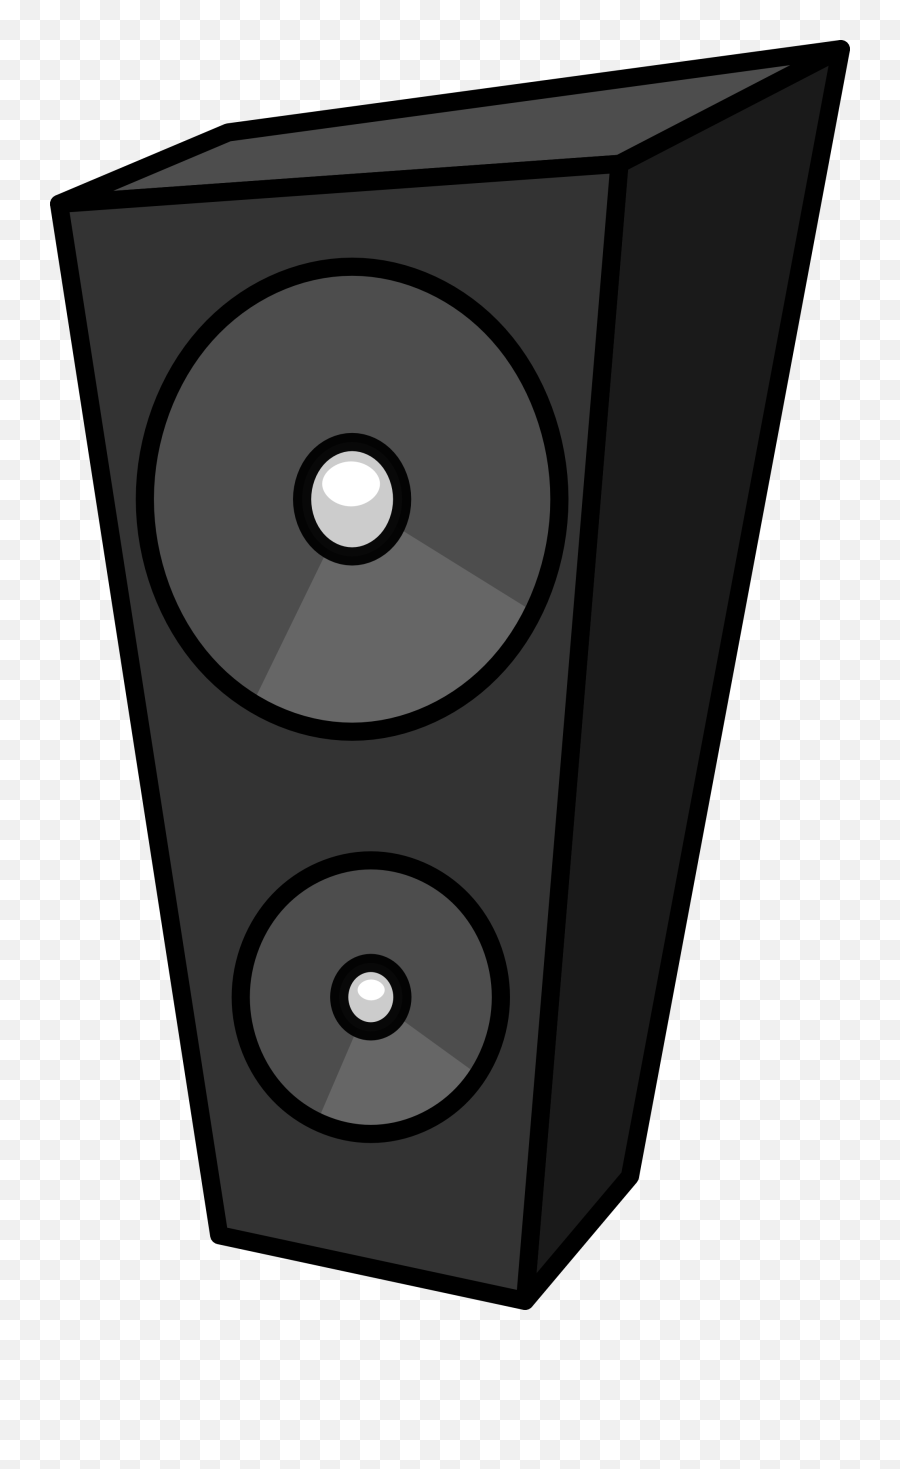 Studio Speaker - Speaker Clip Art Png Download Cartoon Speakers,Speakers Png